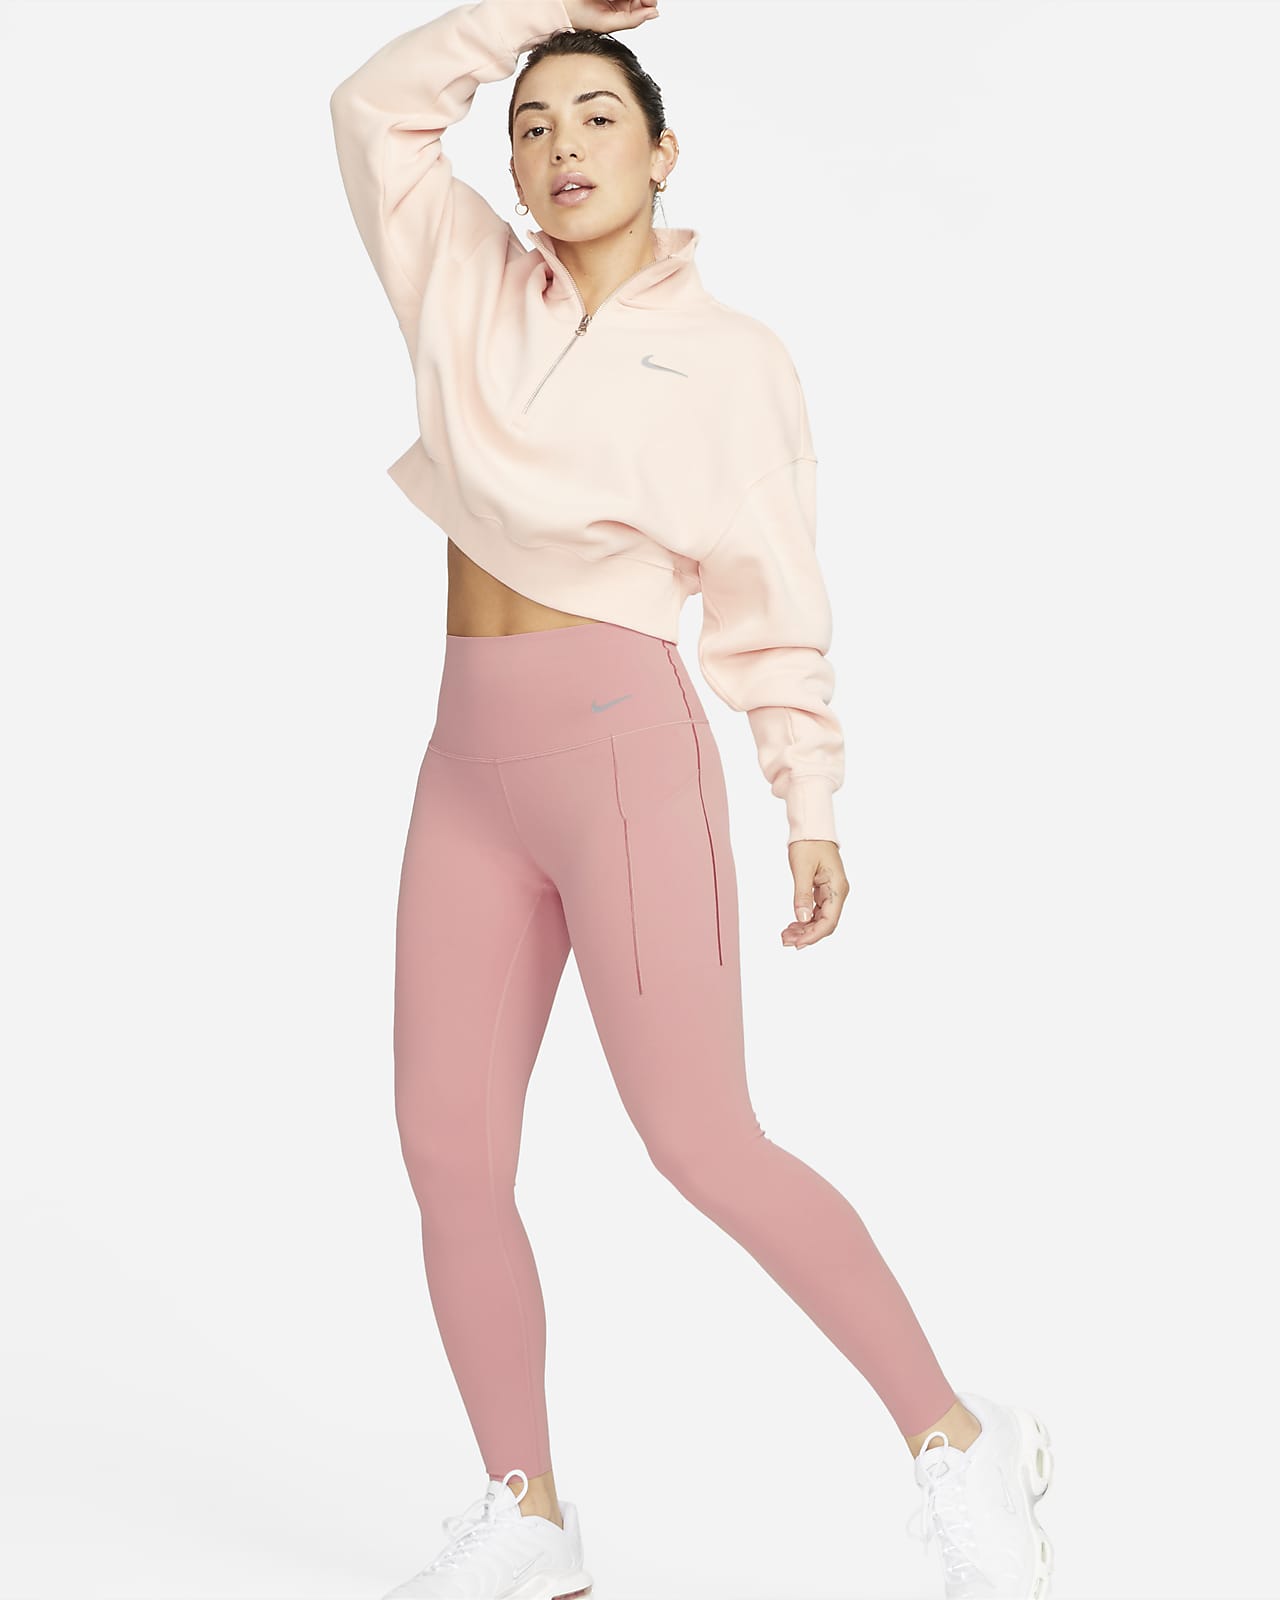 Legging 7/8 taille haute à maintien normal avec poches Nike Universa pour femme